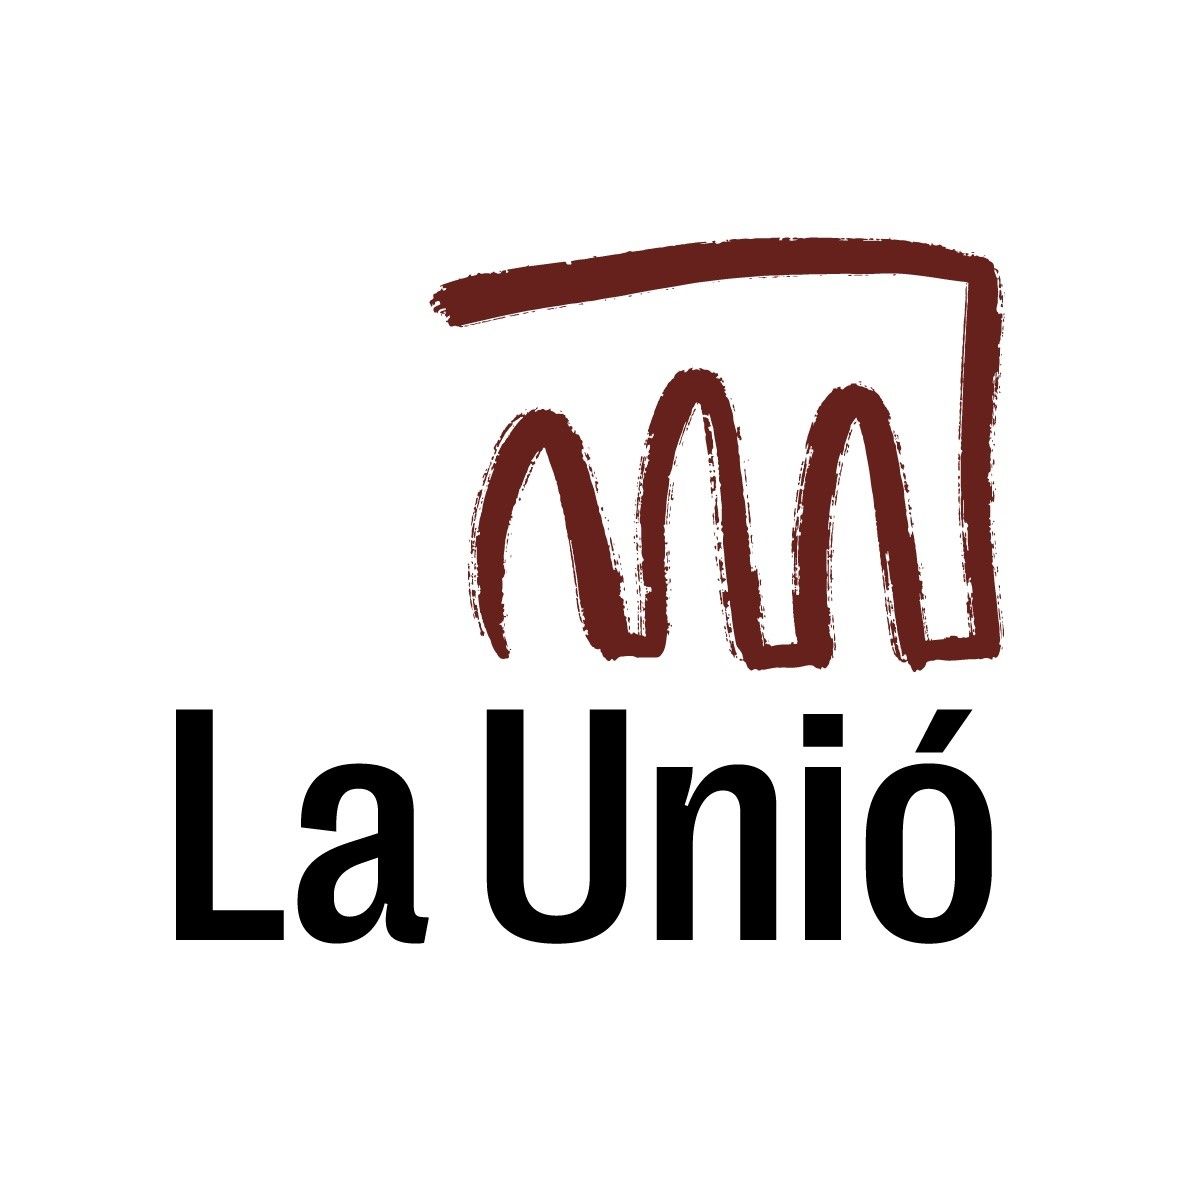 teatre launio logo